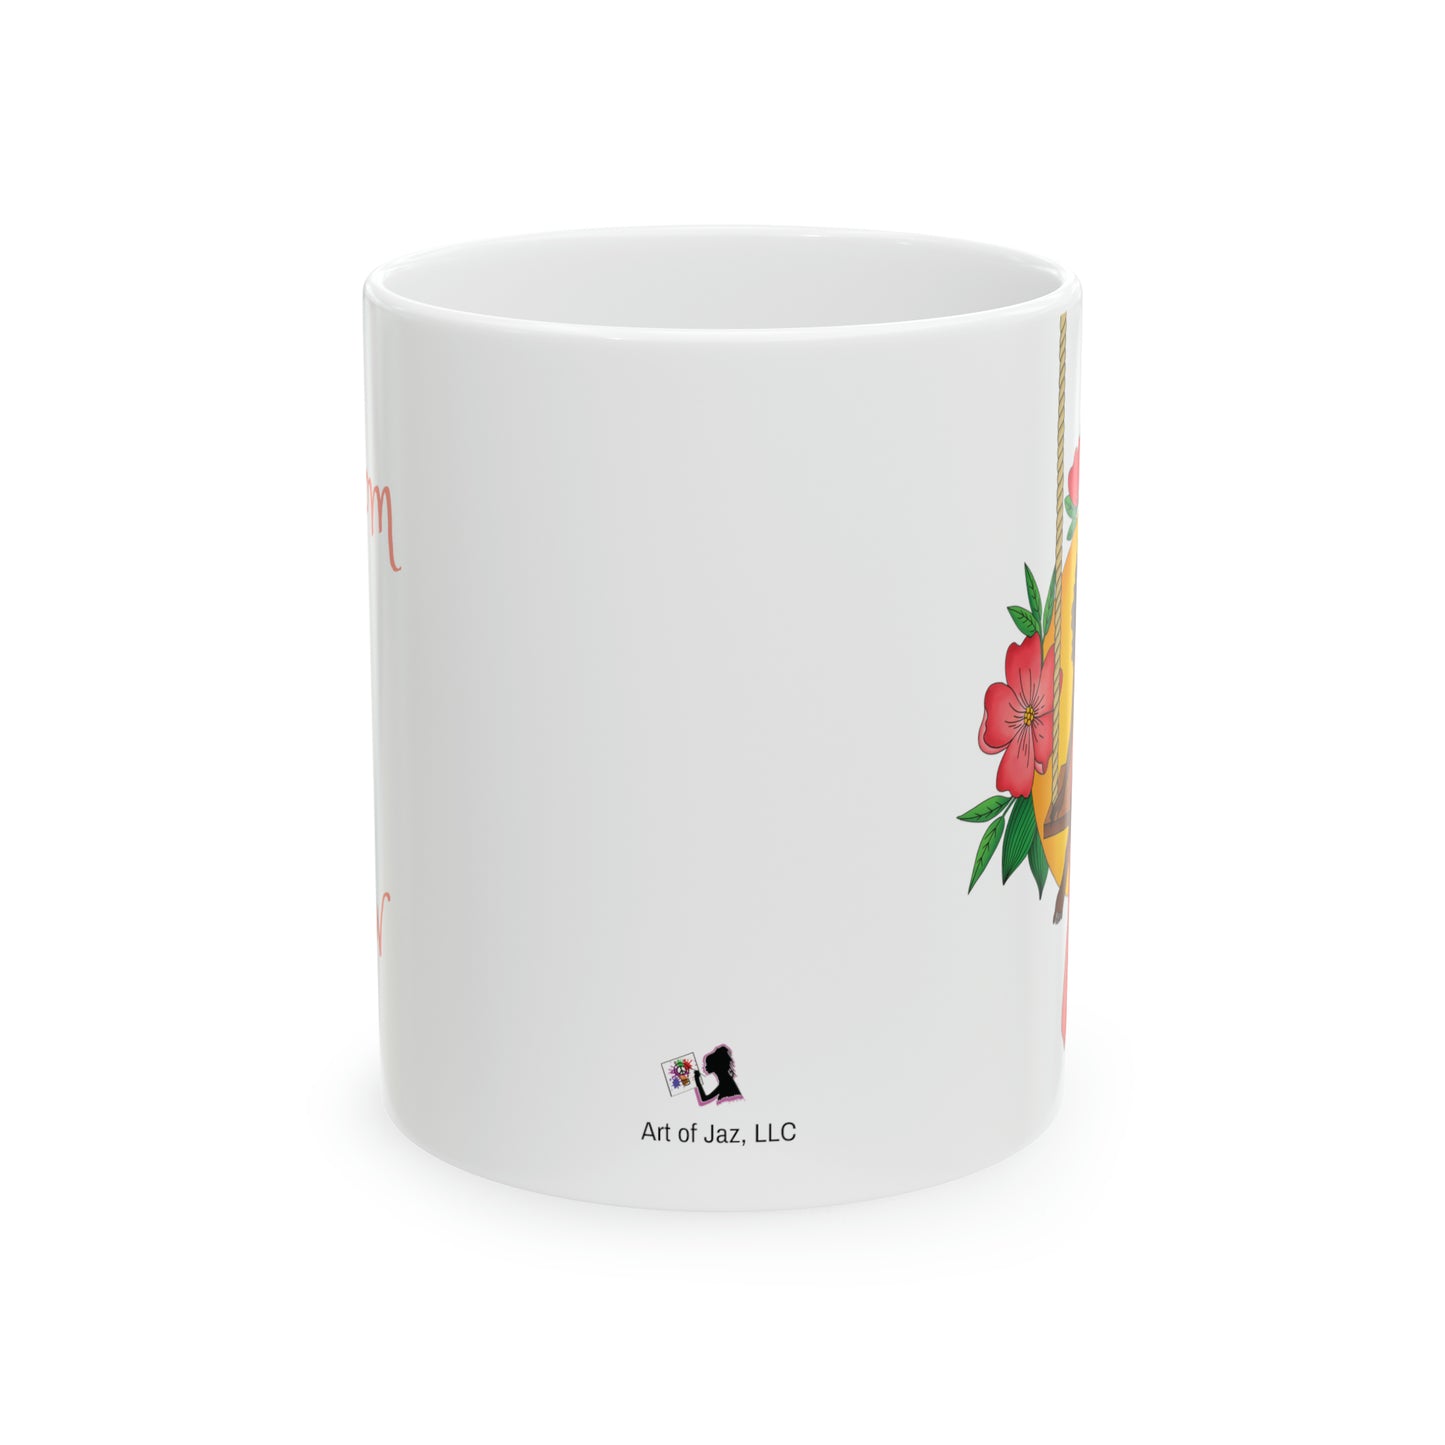 Blossom and Grow- Mug